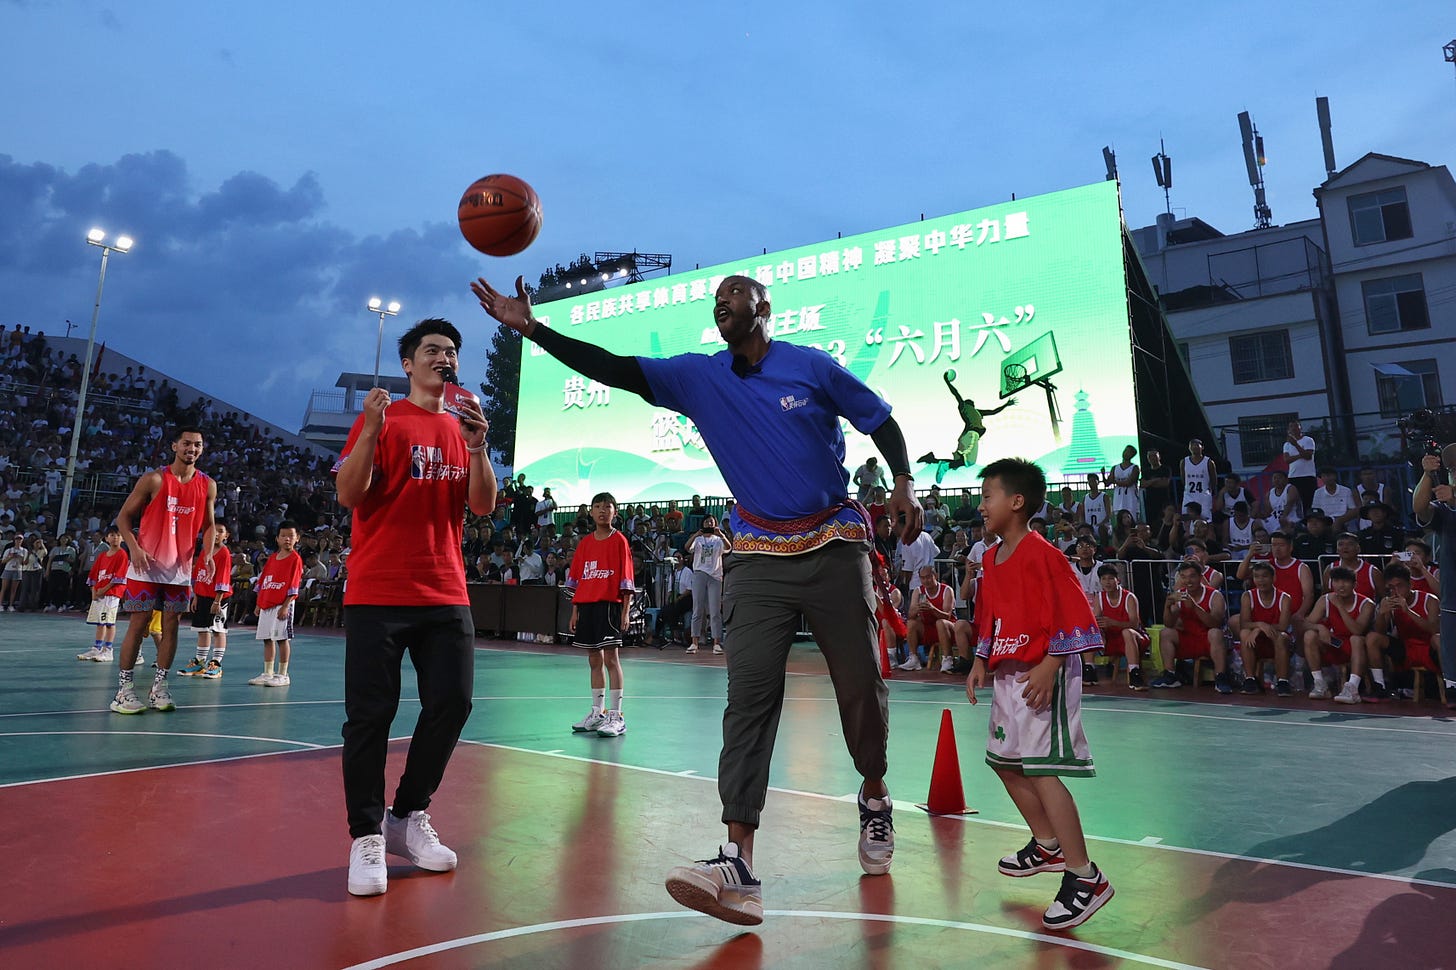 貴州省の台江県台盤村で開催された農村バスケットボール「村BA」の様子。元NBA選手のステフォン・マーブリー氏が参加した